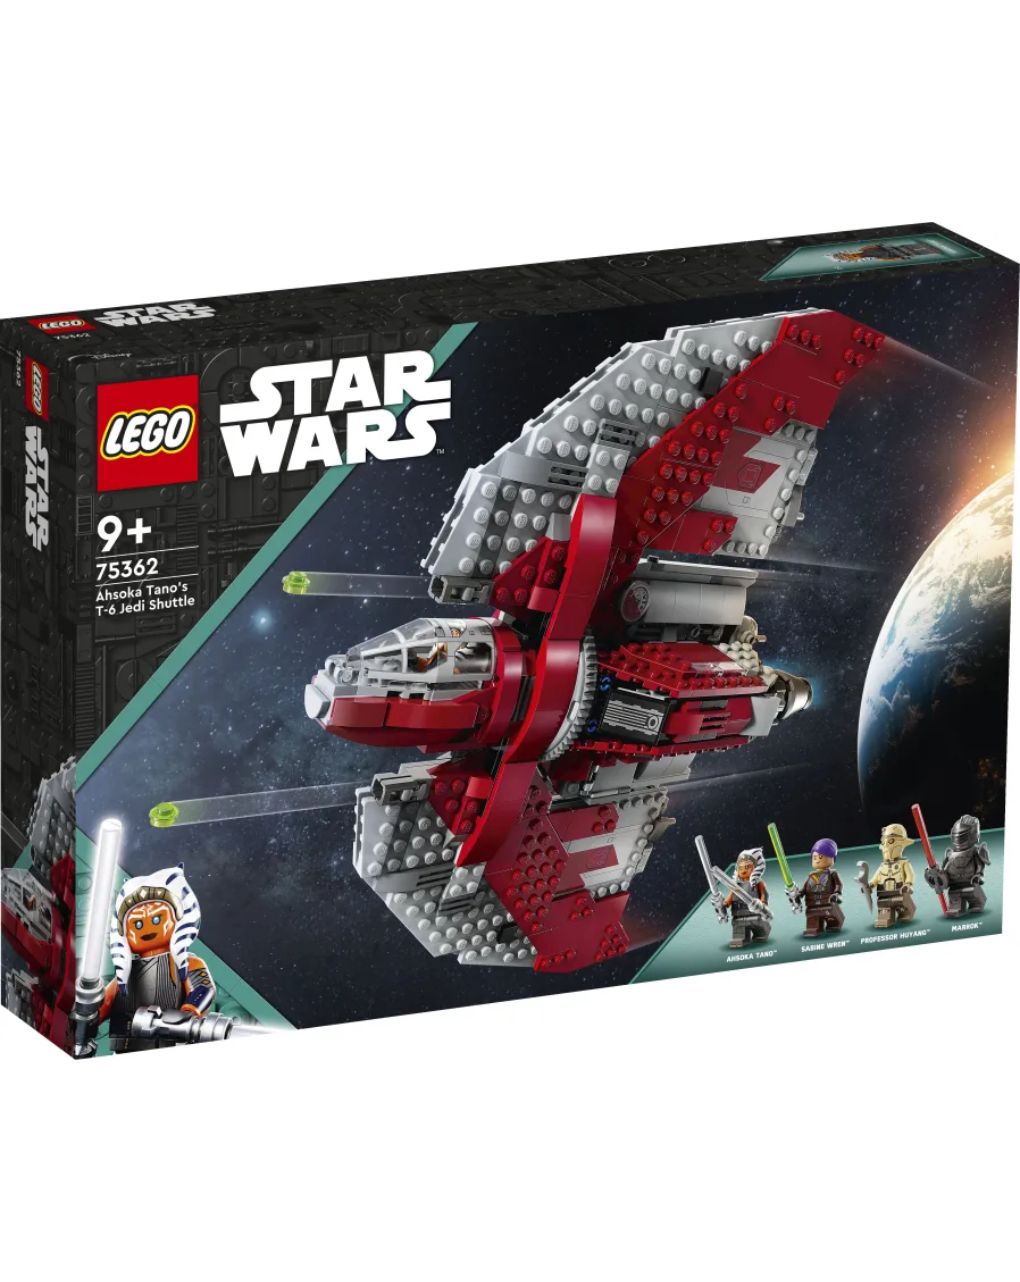 Lego star wars ahsoka tano's t6 jedi shuttle 75362